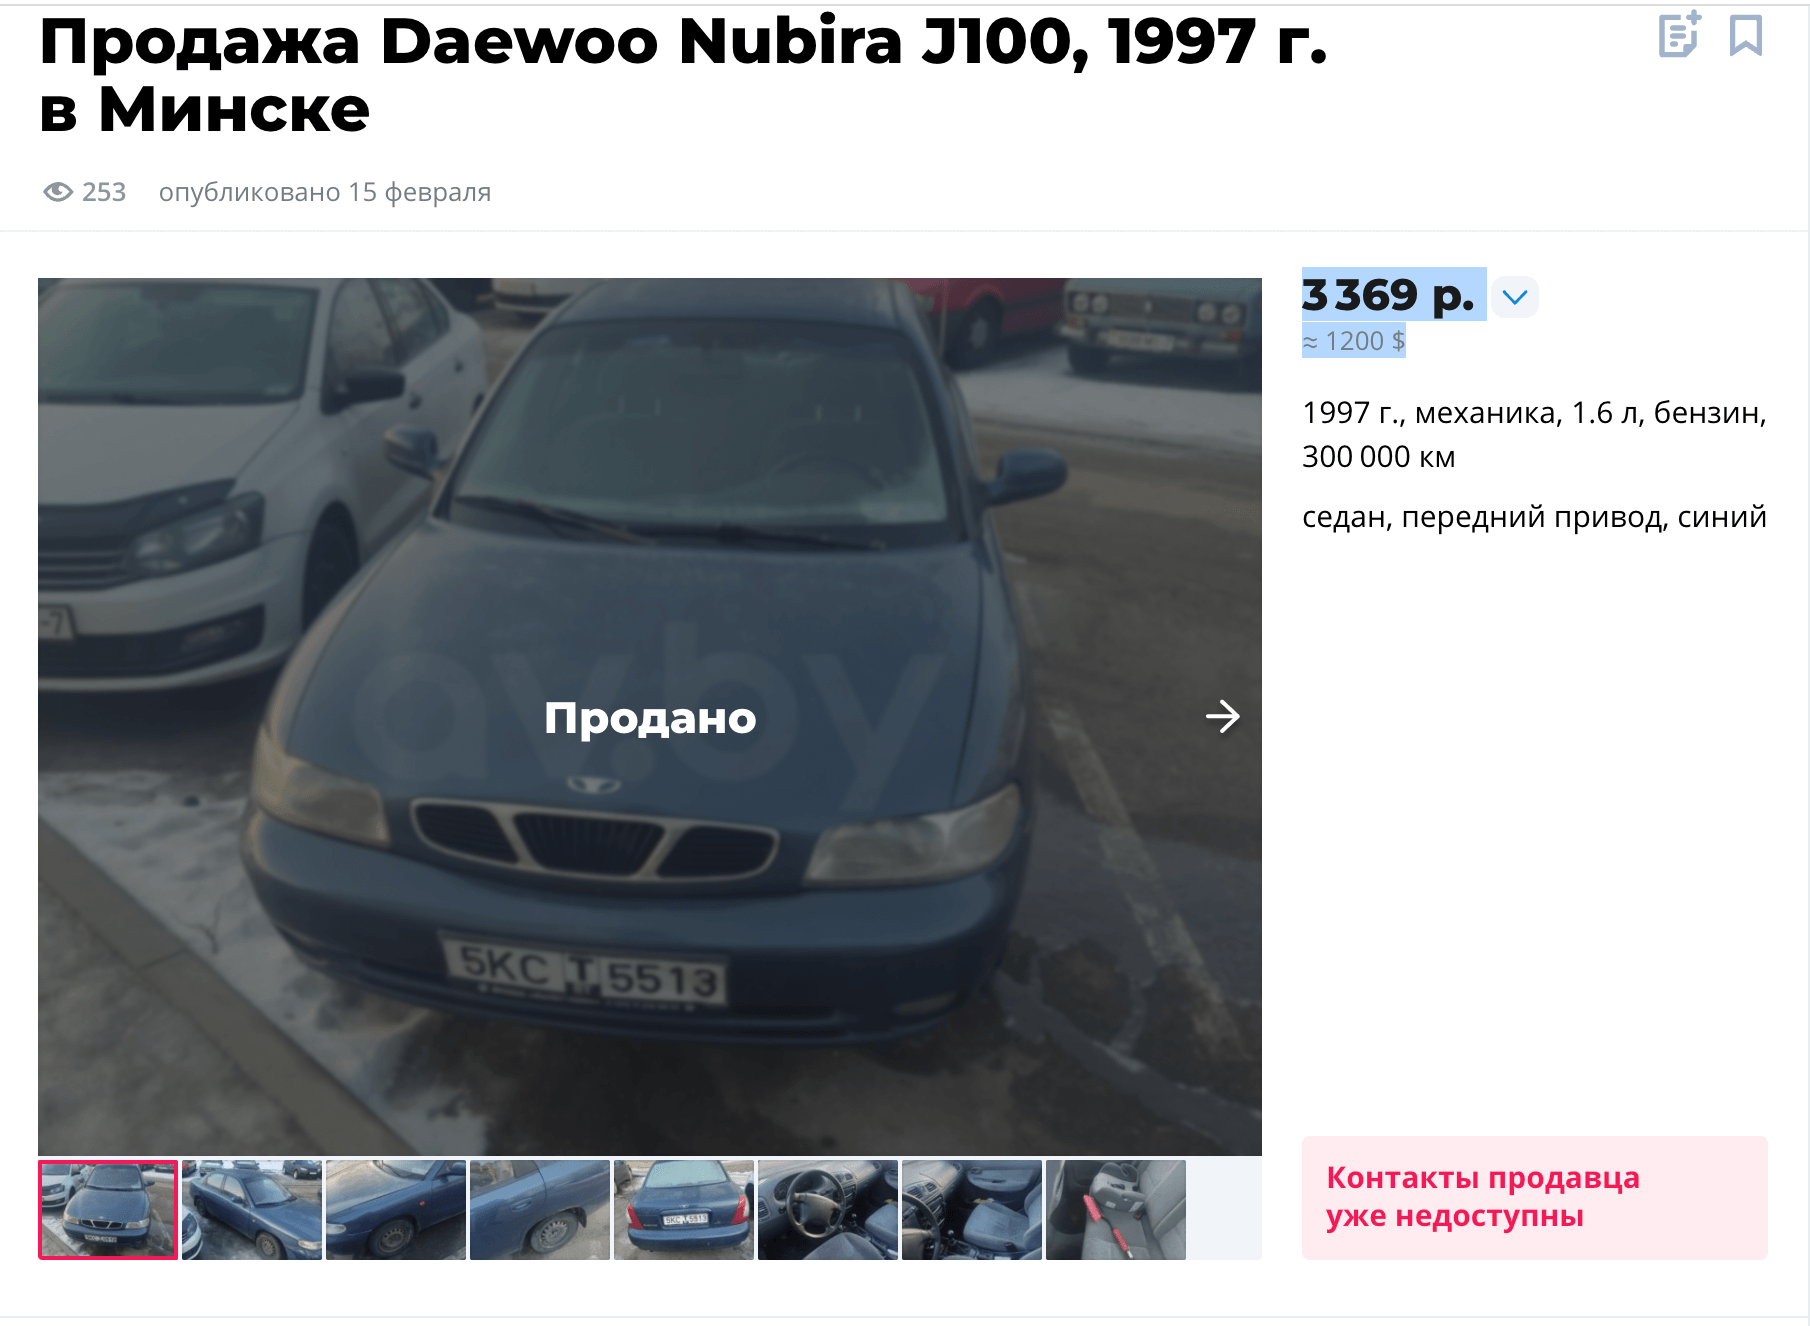 Daewoo Nubira з арыентыровак была прададзеная за $1200